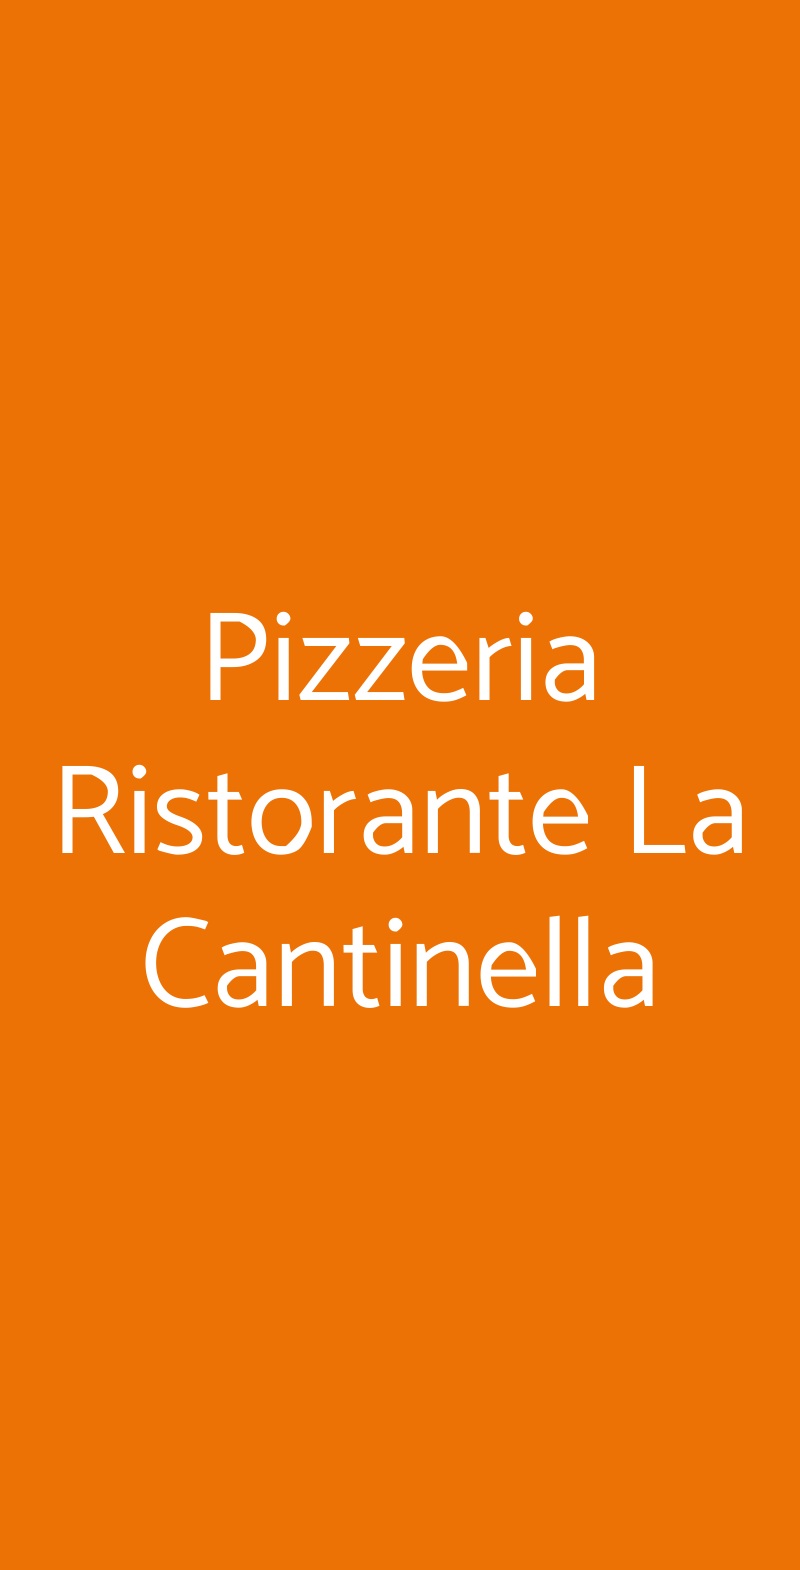 Pizzeria Ristorante La Cantinella Chivasso menù 1 pagina